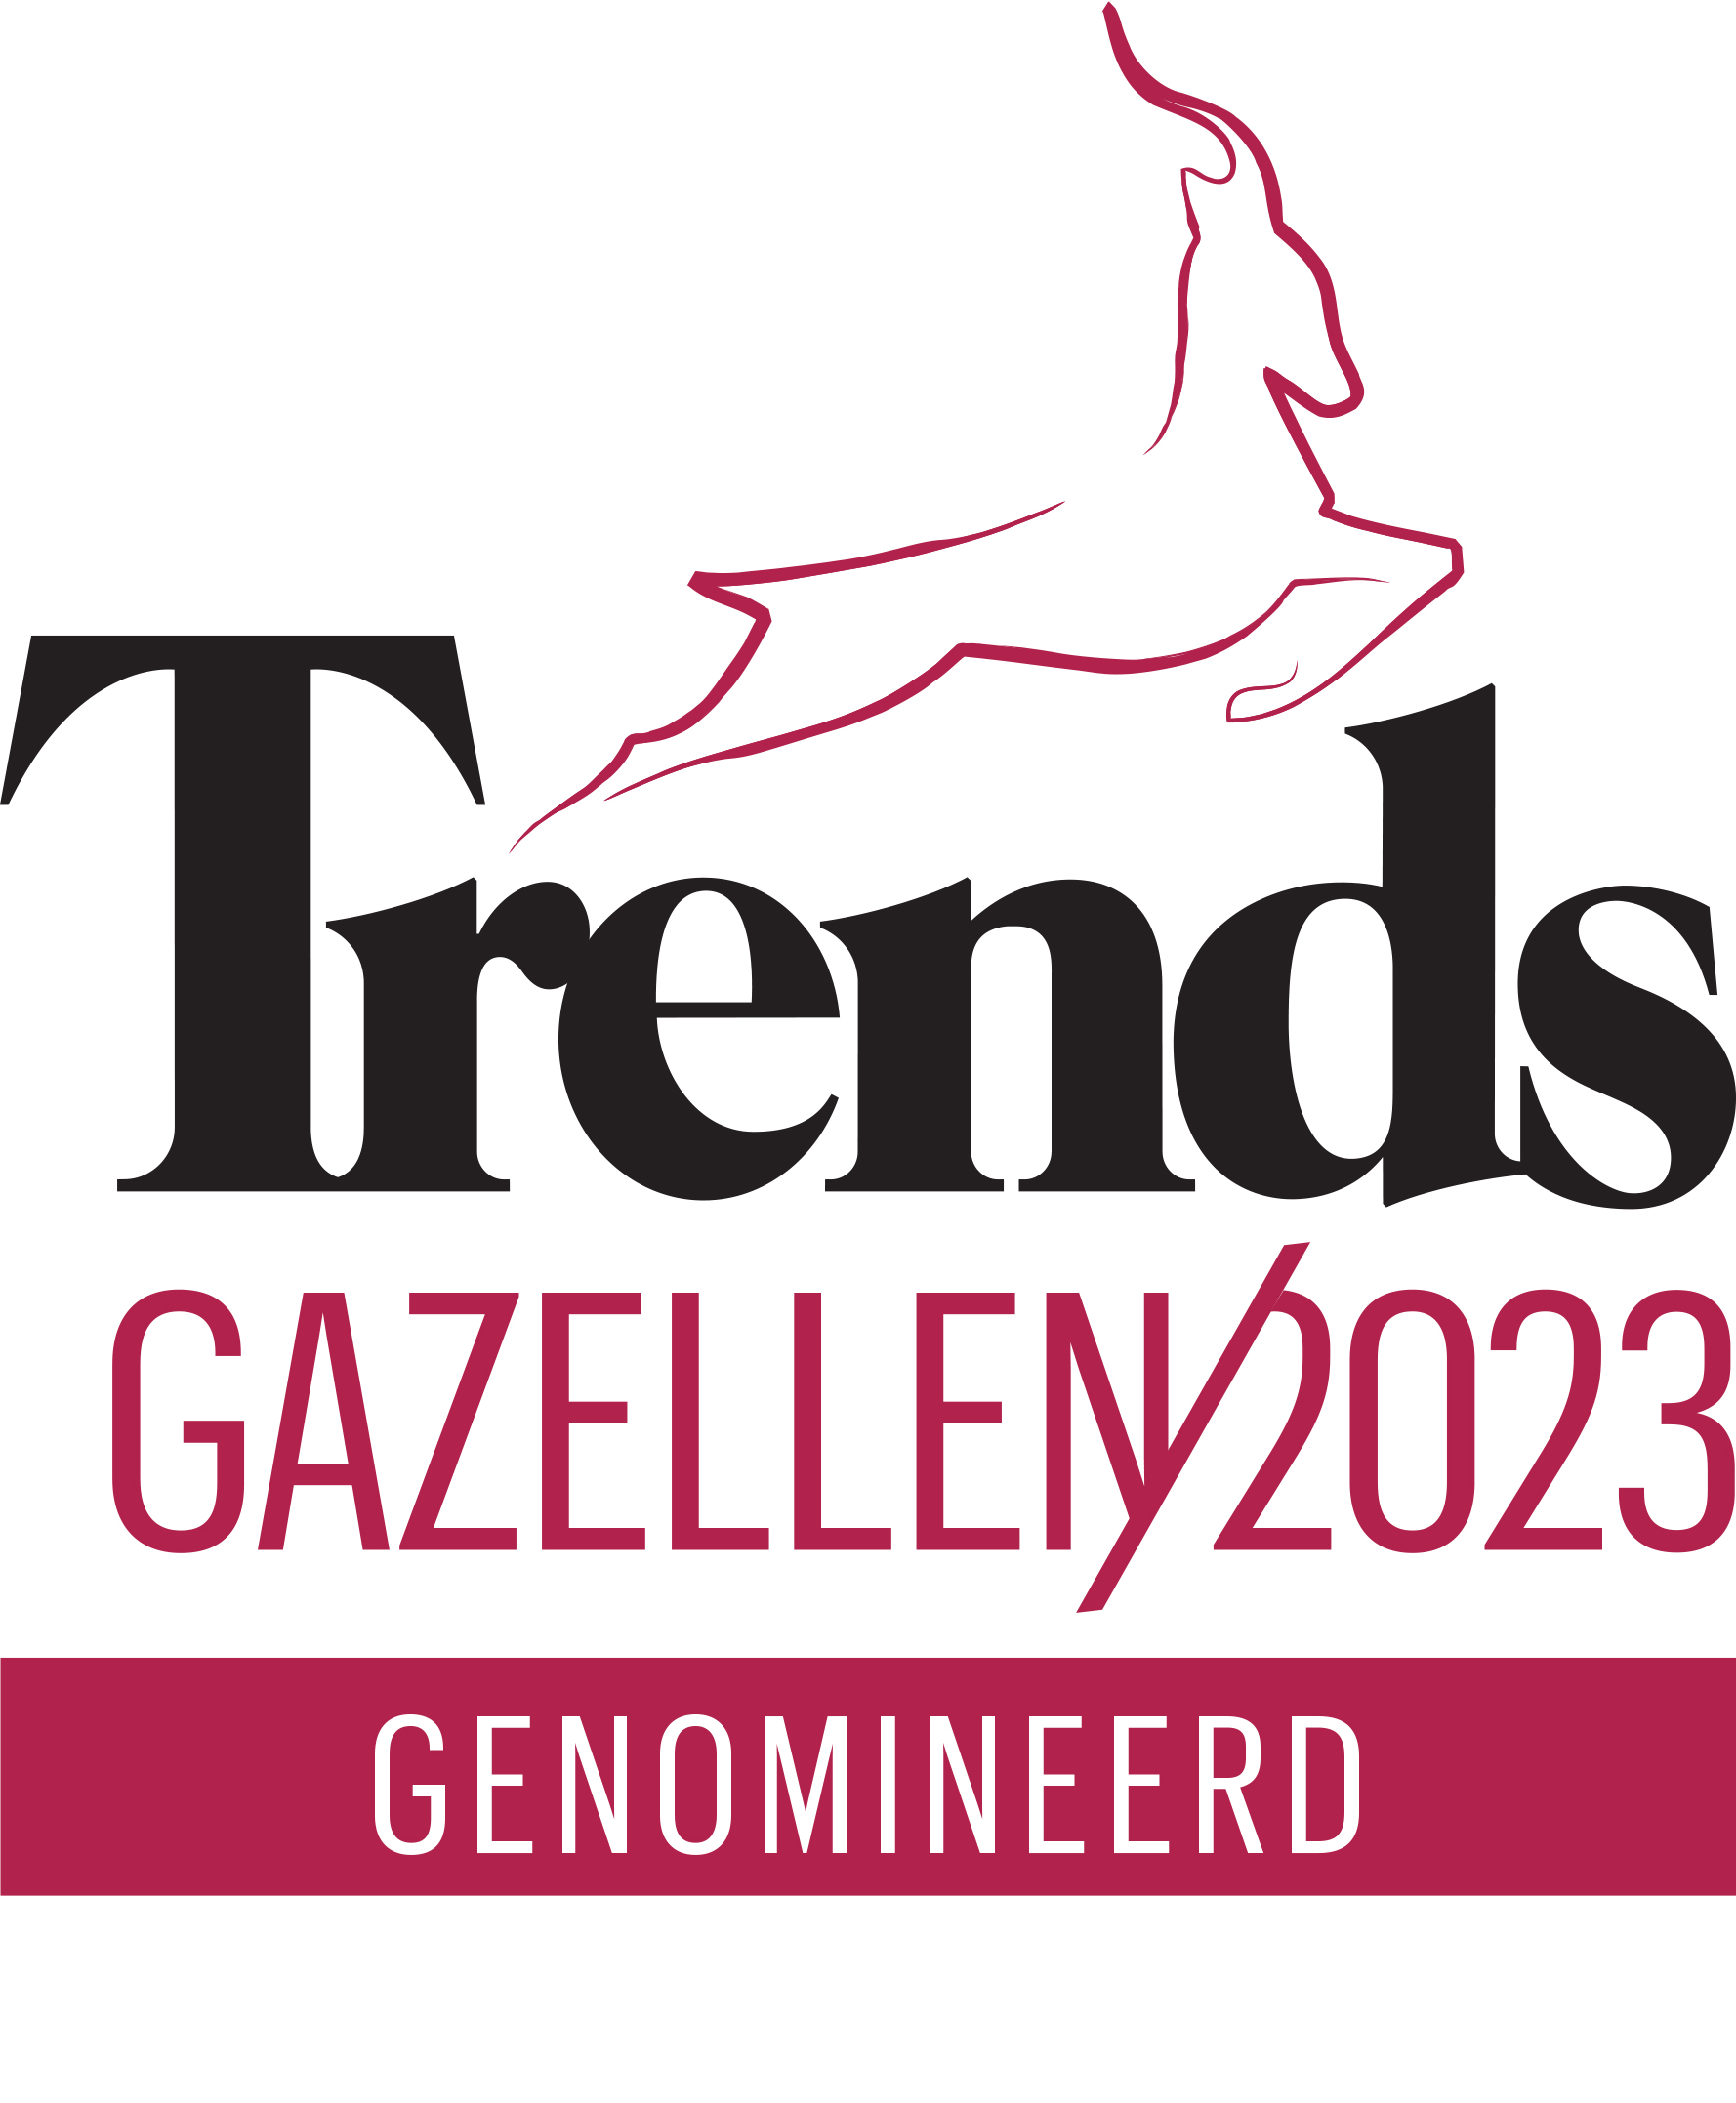 Marma récompensé par une nomination Trends Gazelles 2023